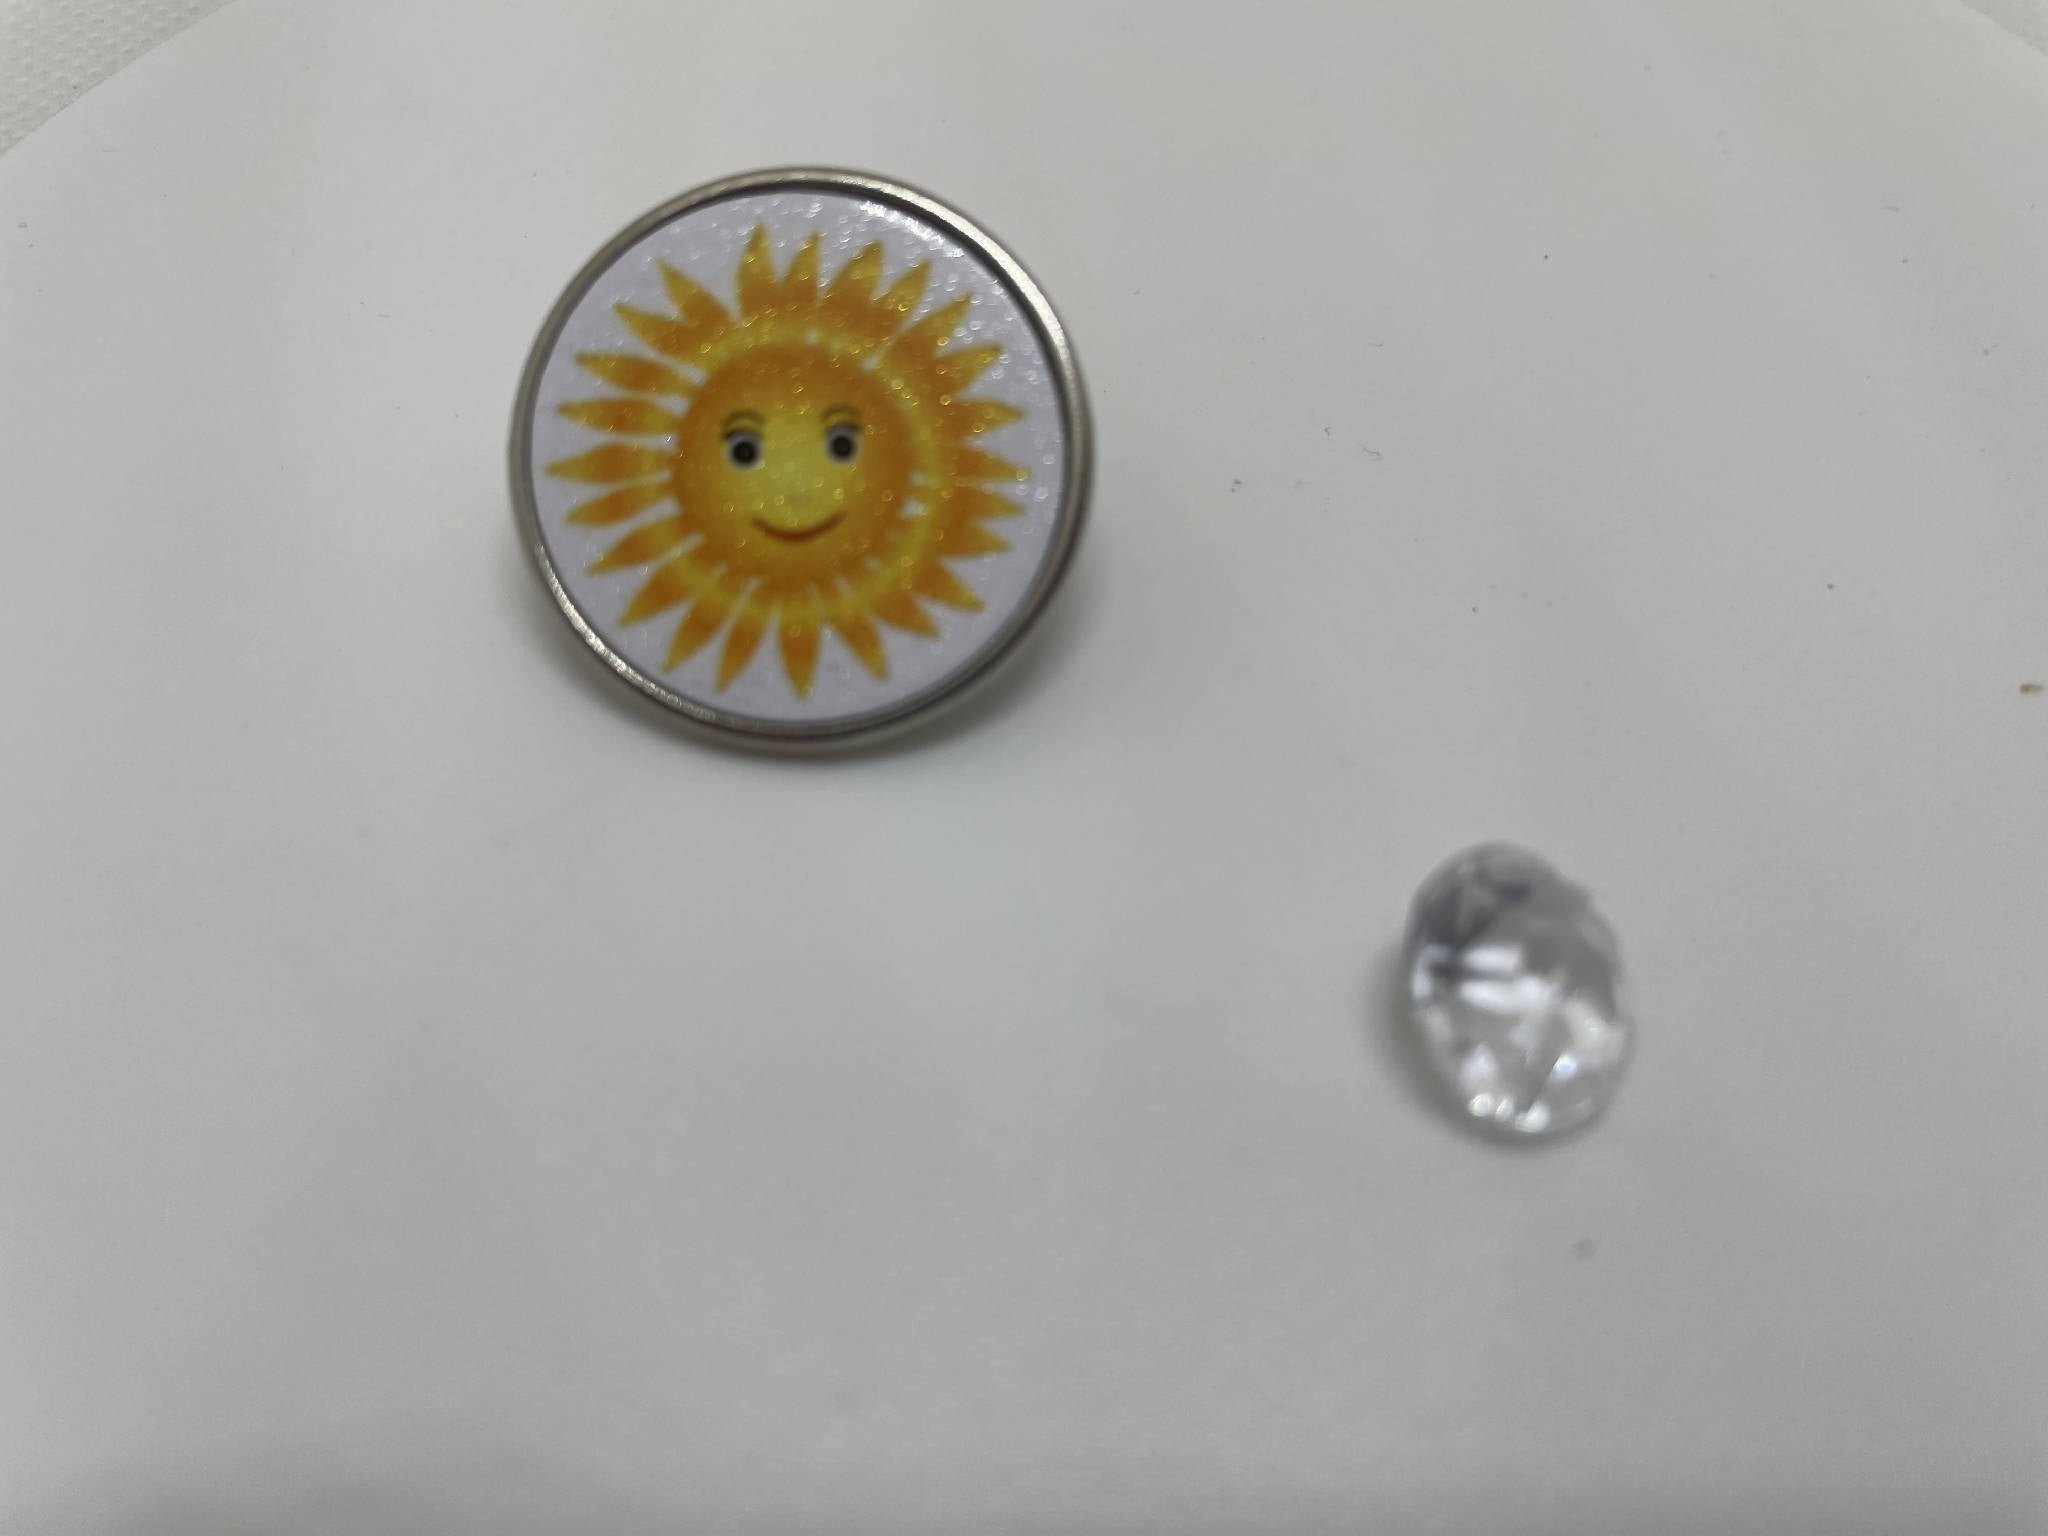 Mum or sun pin badge